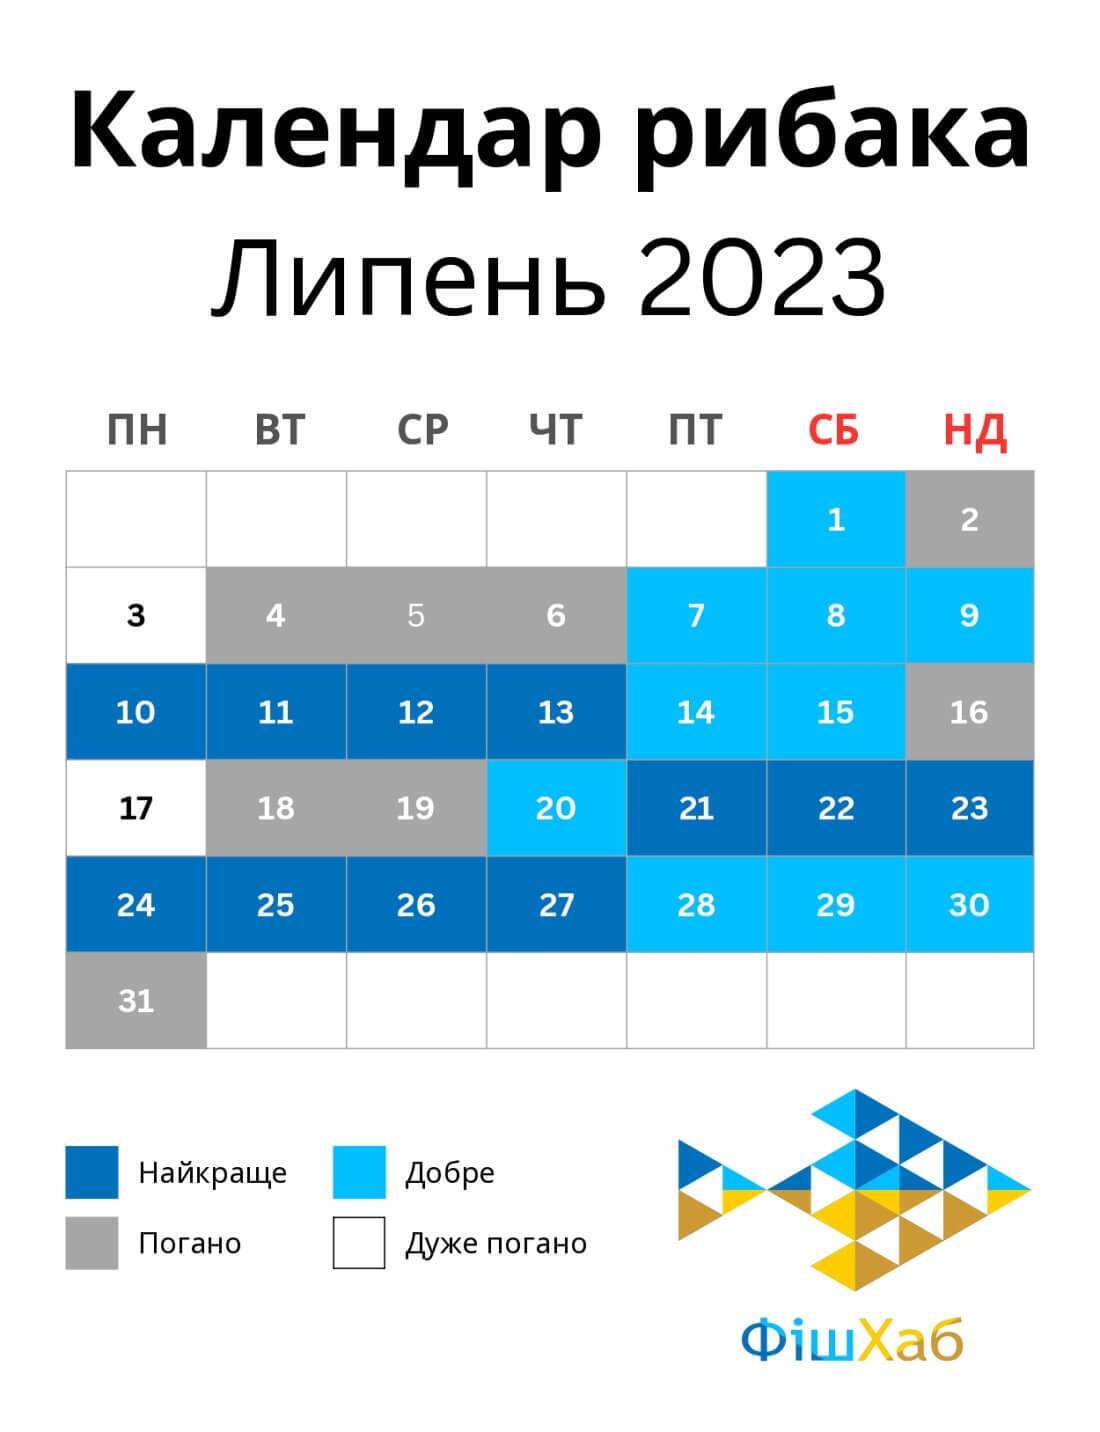 Календарь рыбака на июль 2023 - когда лучше будет клевать | OBOZ.UA